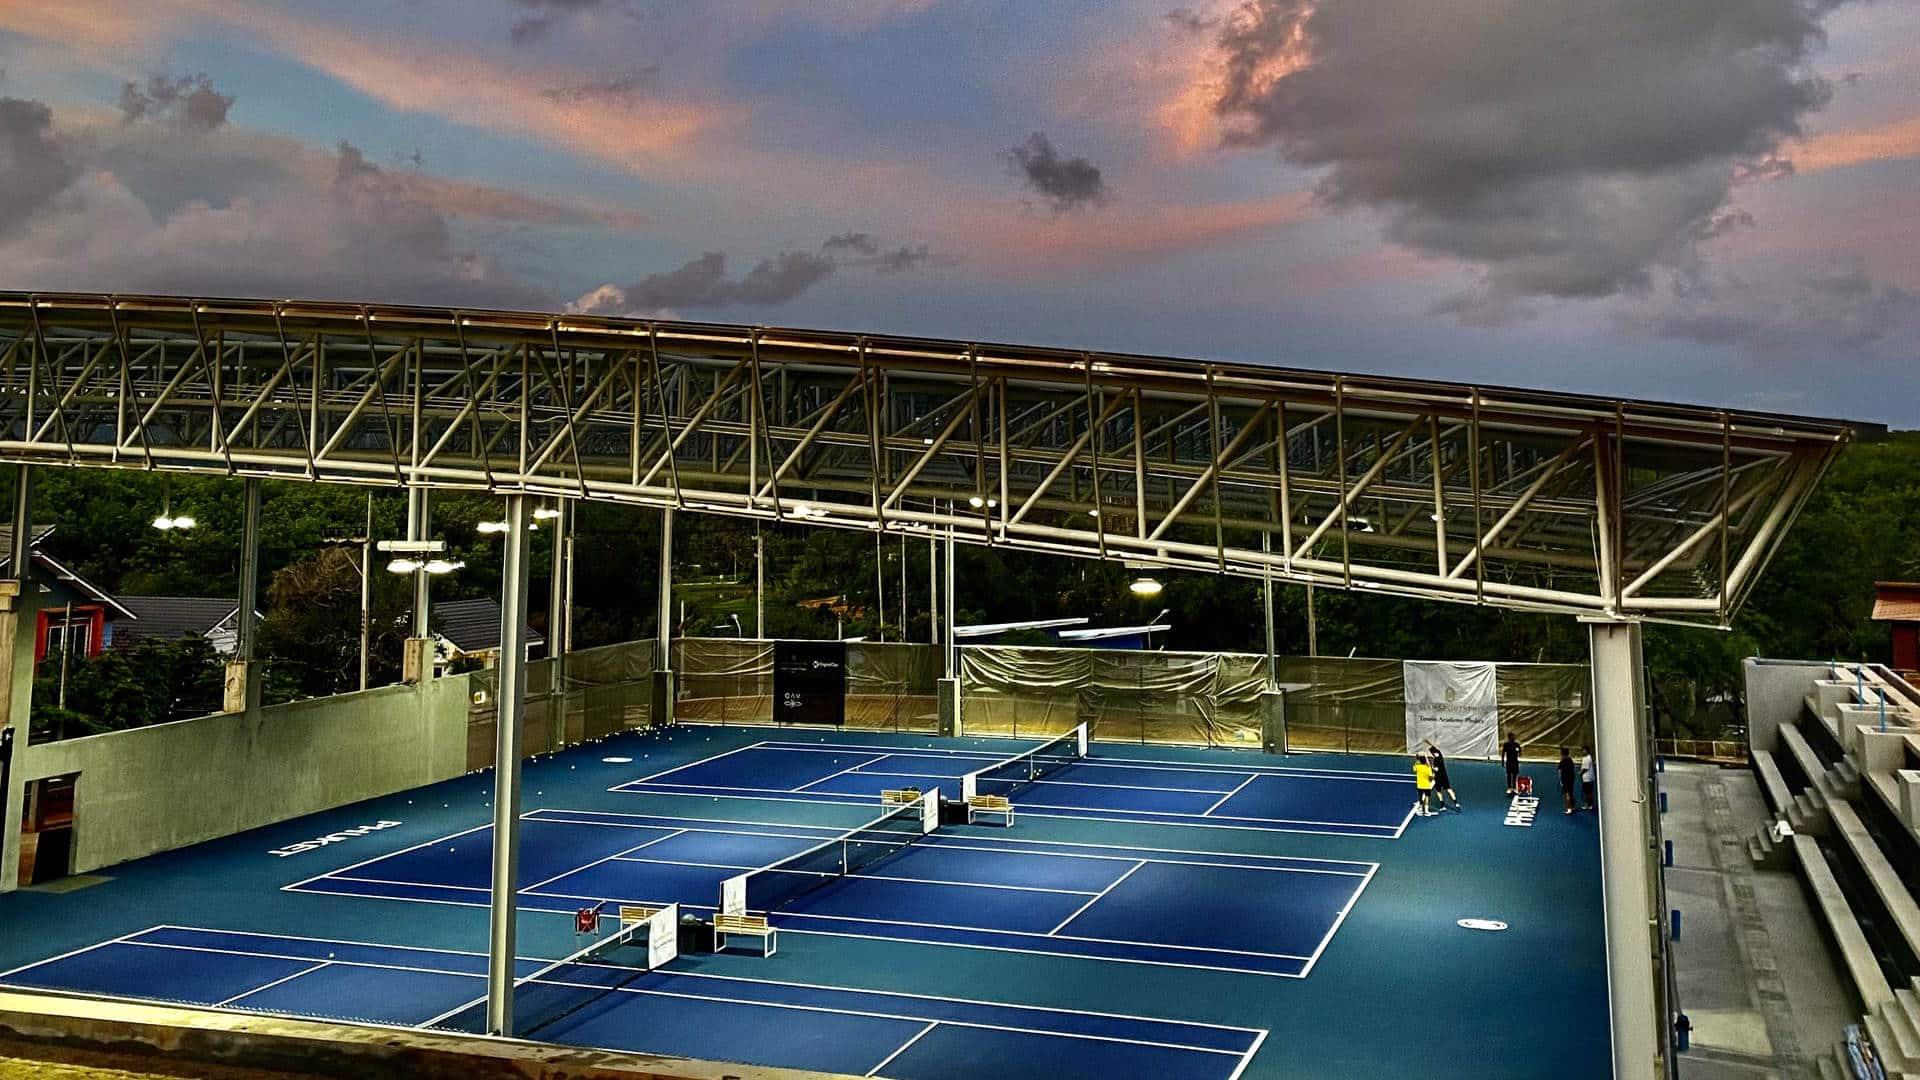 SiamSportsPro Tennis Academy Phuket 3 Laykold Courts